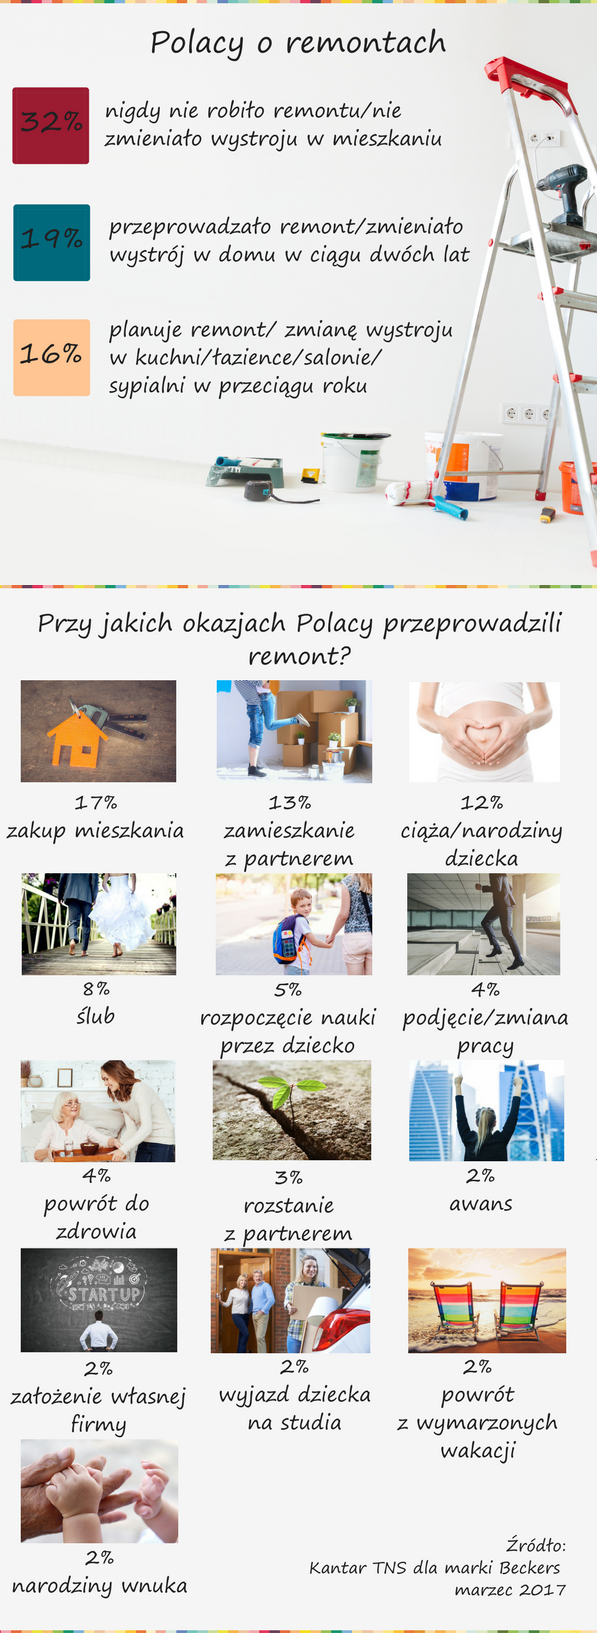 Blisko 1/3 Polaków nigdy nie robiła w domu remontu